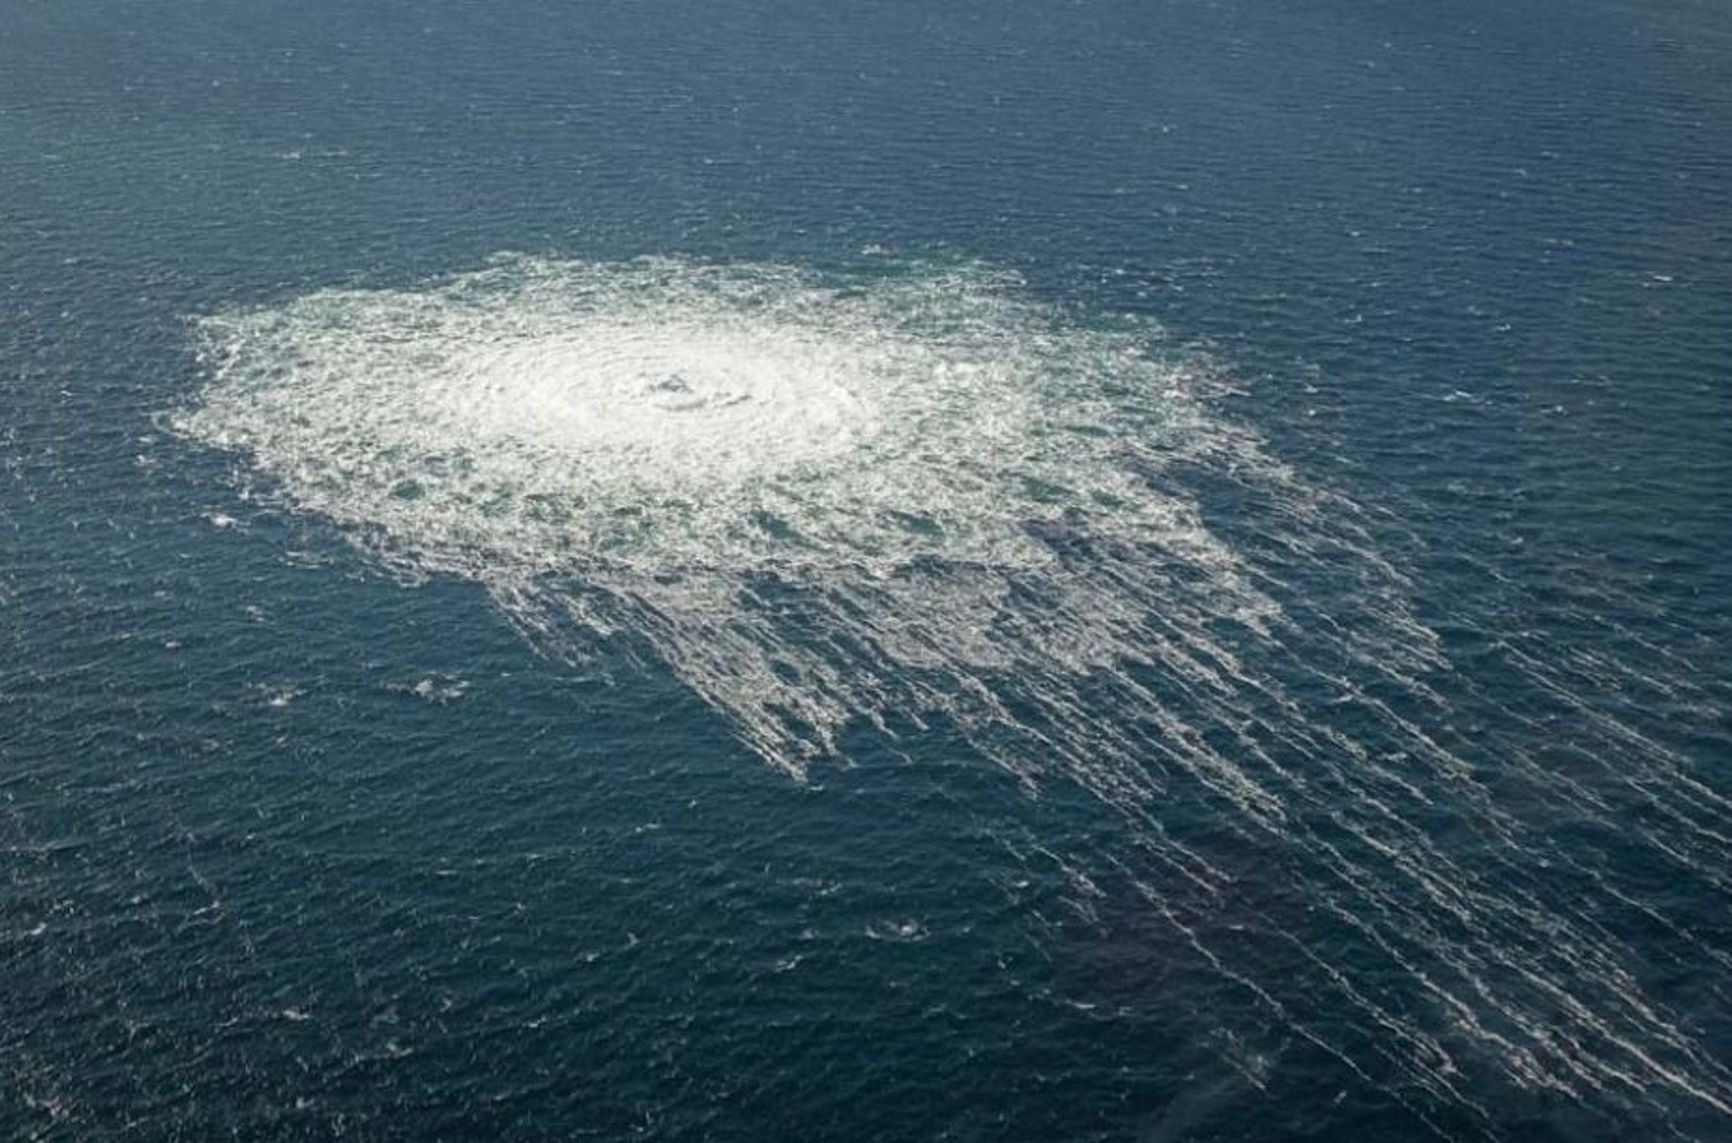 Ученые из ООН обнаружили огромный шлейф метана после прорыва «Северного потока». Выброс может стать крупнейшим из зарегистрированных